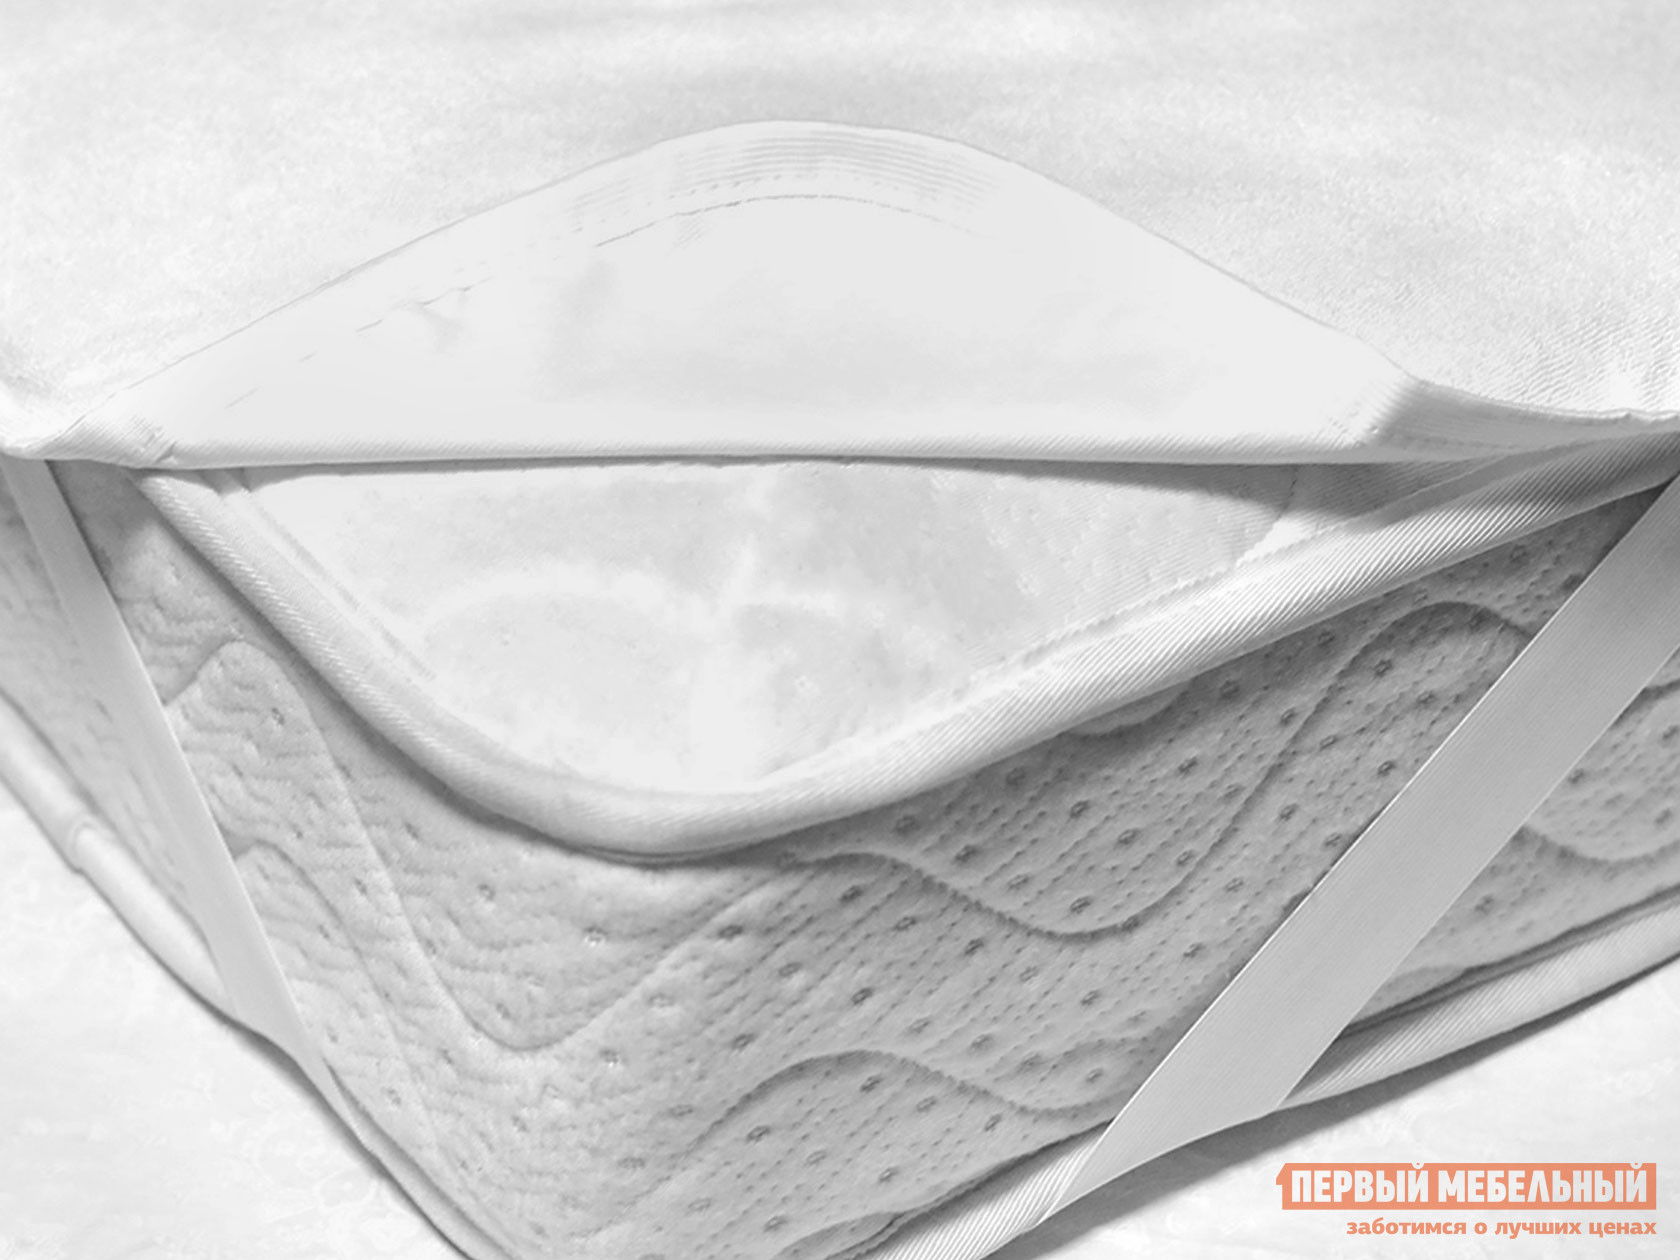 Чехол для матраса  Фулл протекшн на резинке Белый махровый, 800 Х 2000 мм от Первый Мебельный